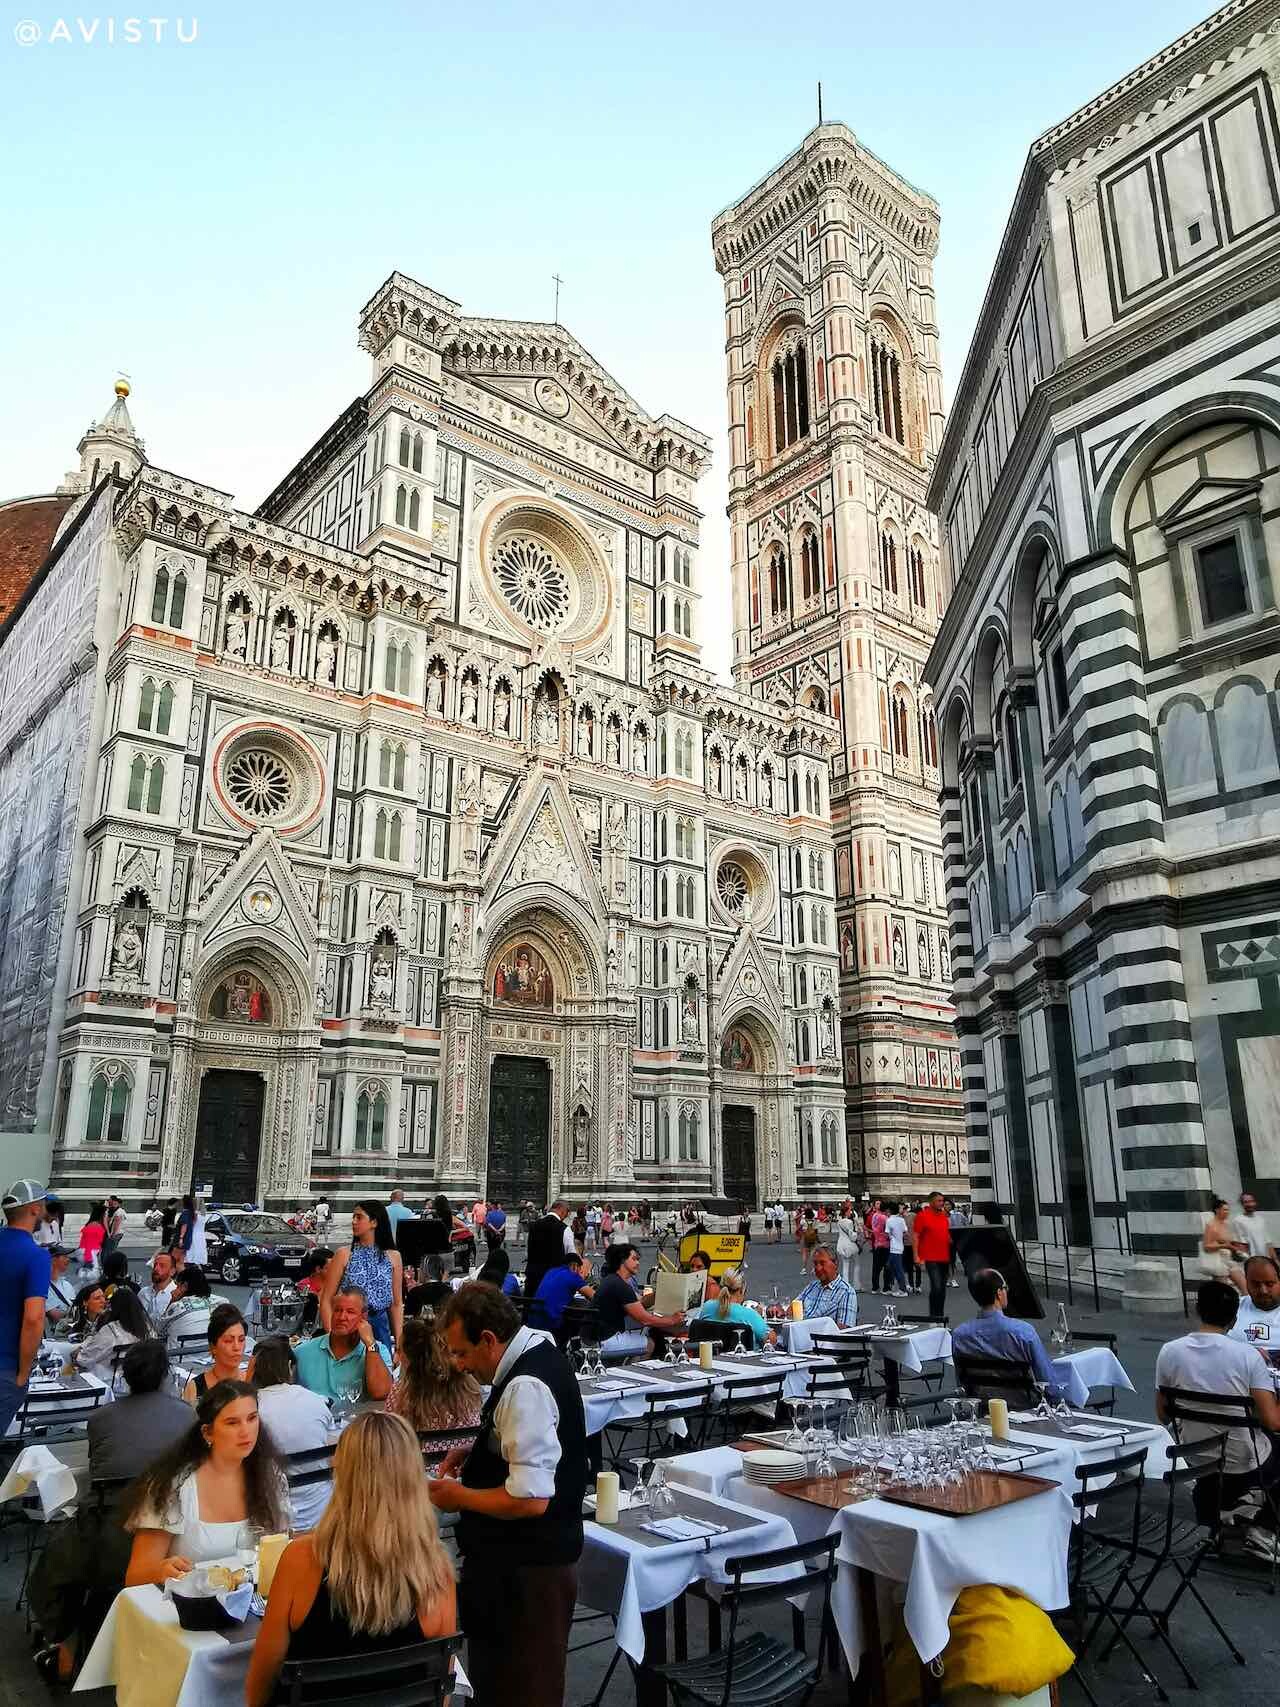 La Catedral de Florencia [(c) Foto: @avistu]]